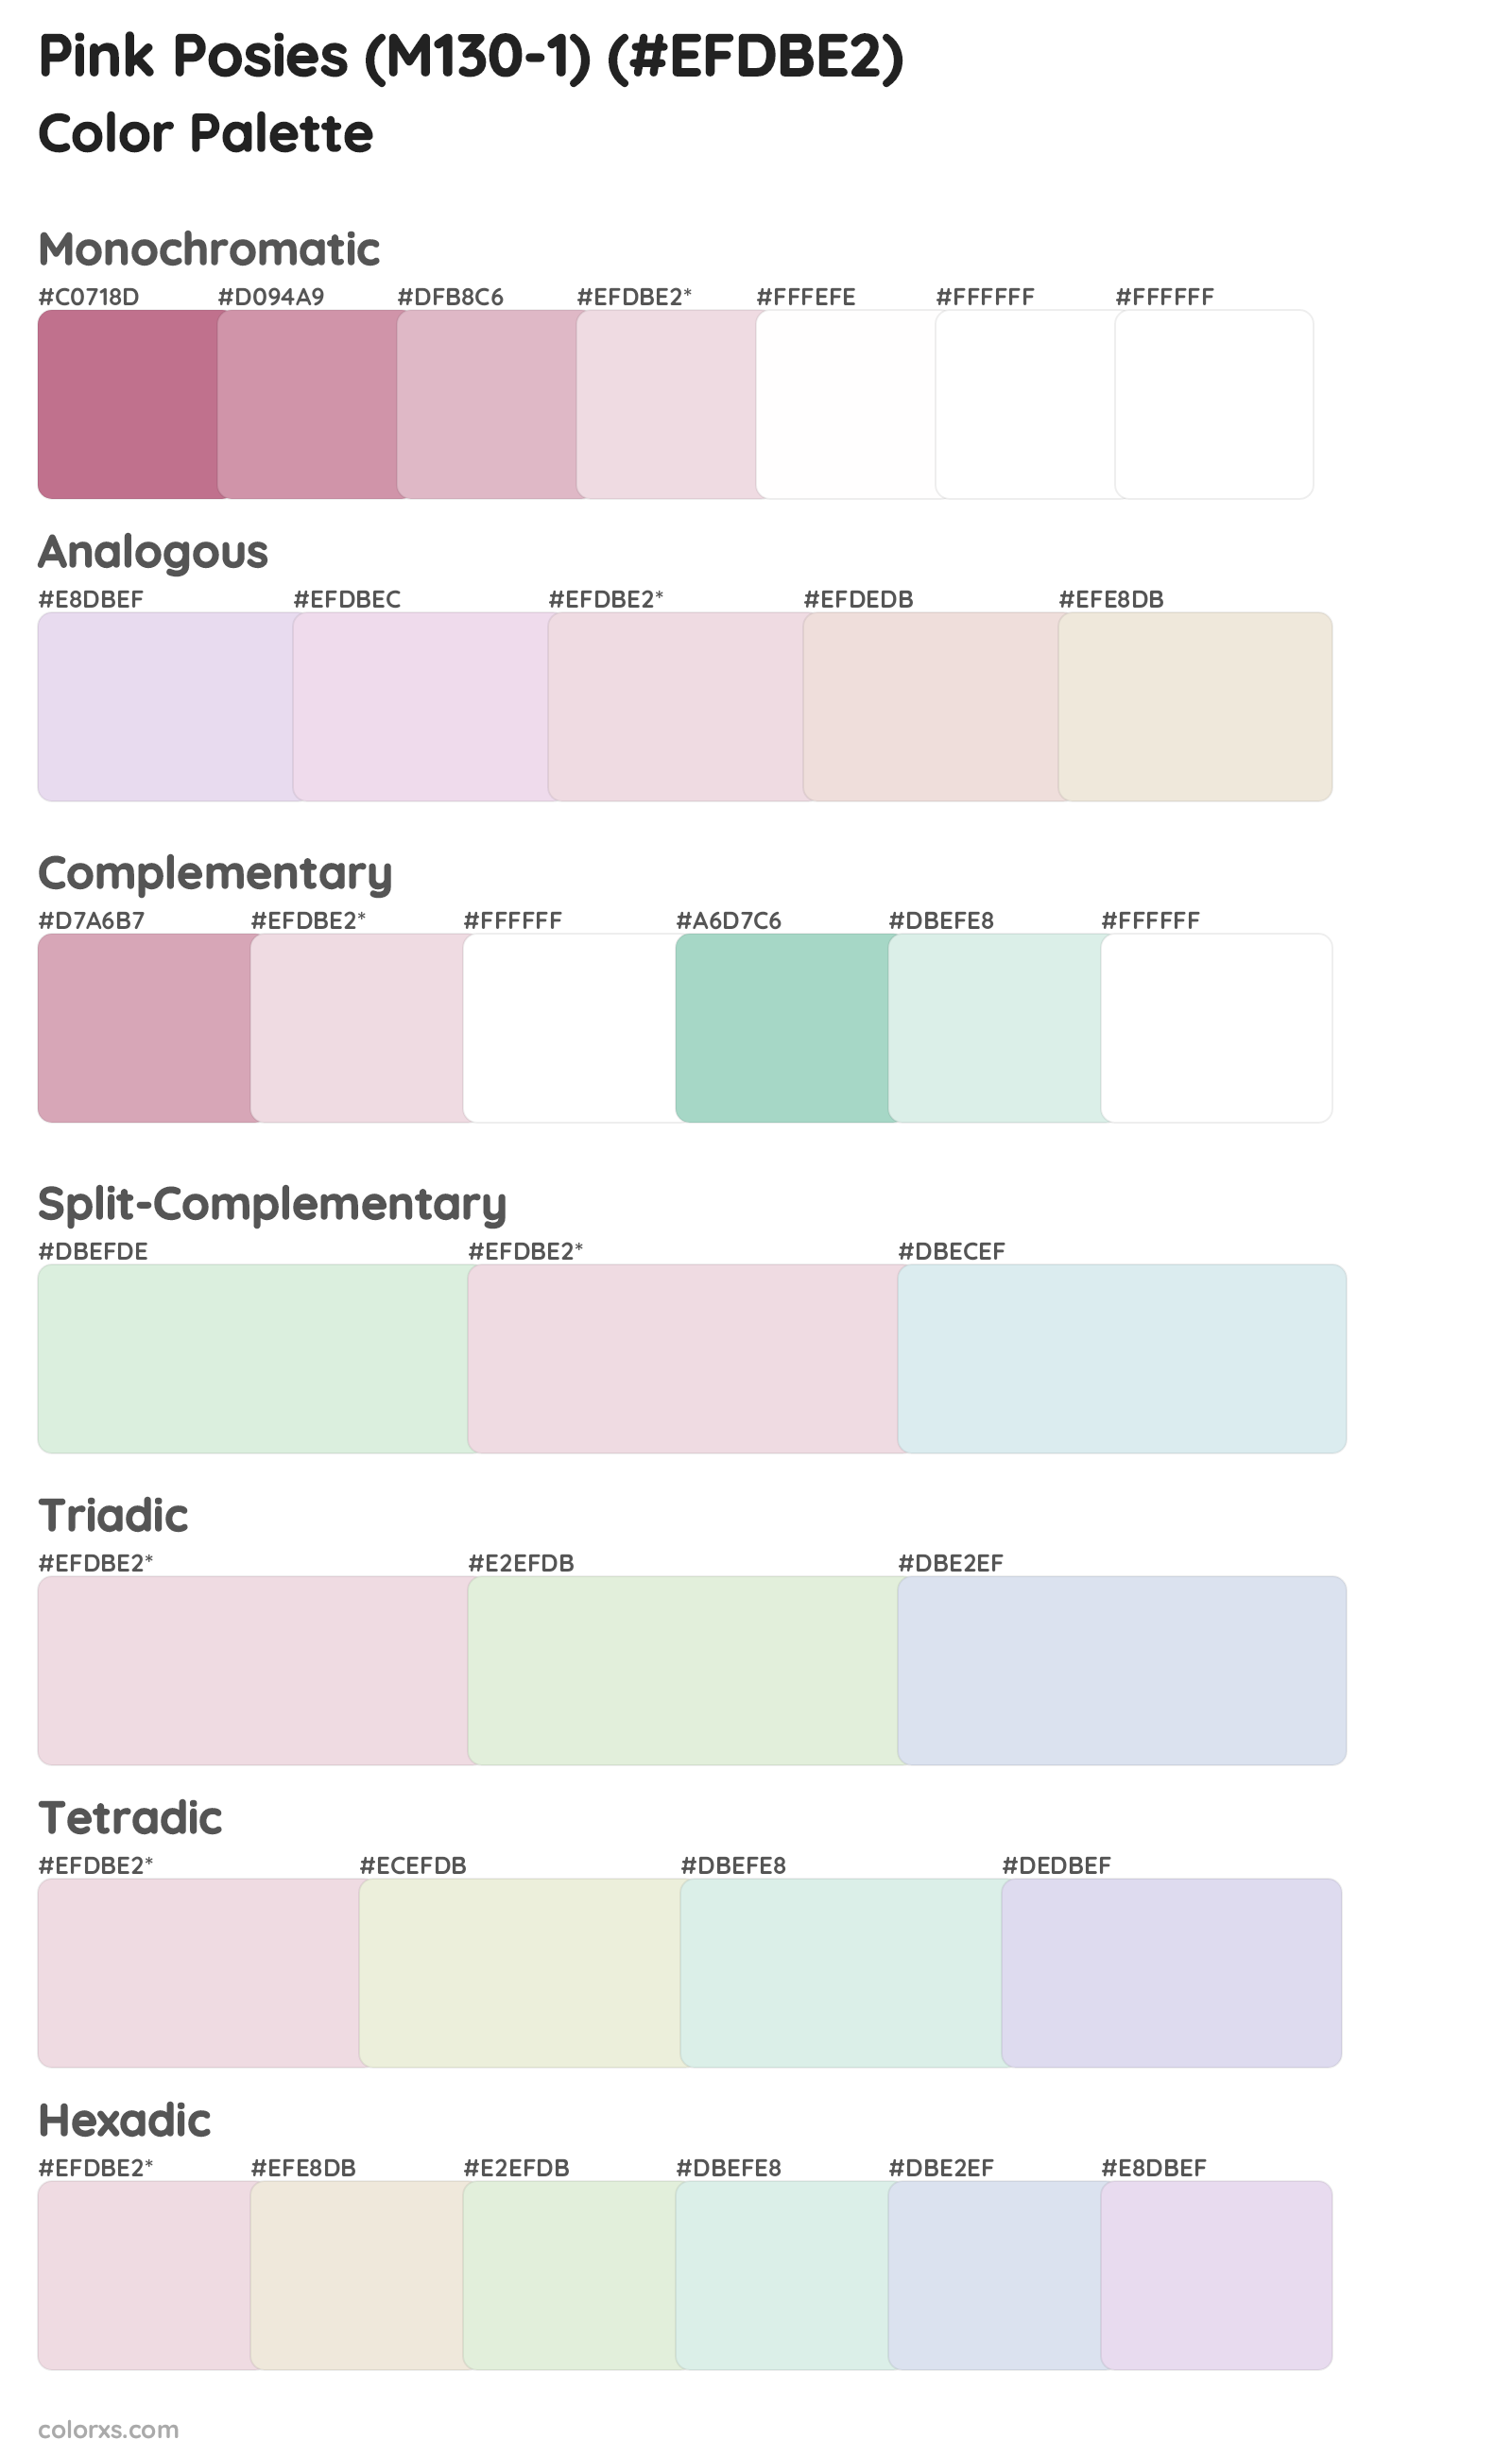 Pink Posies (M130-1) Color Scheme Palettes